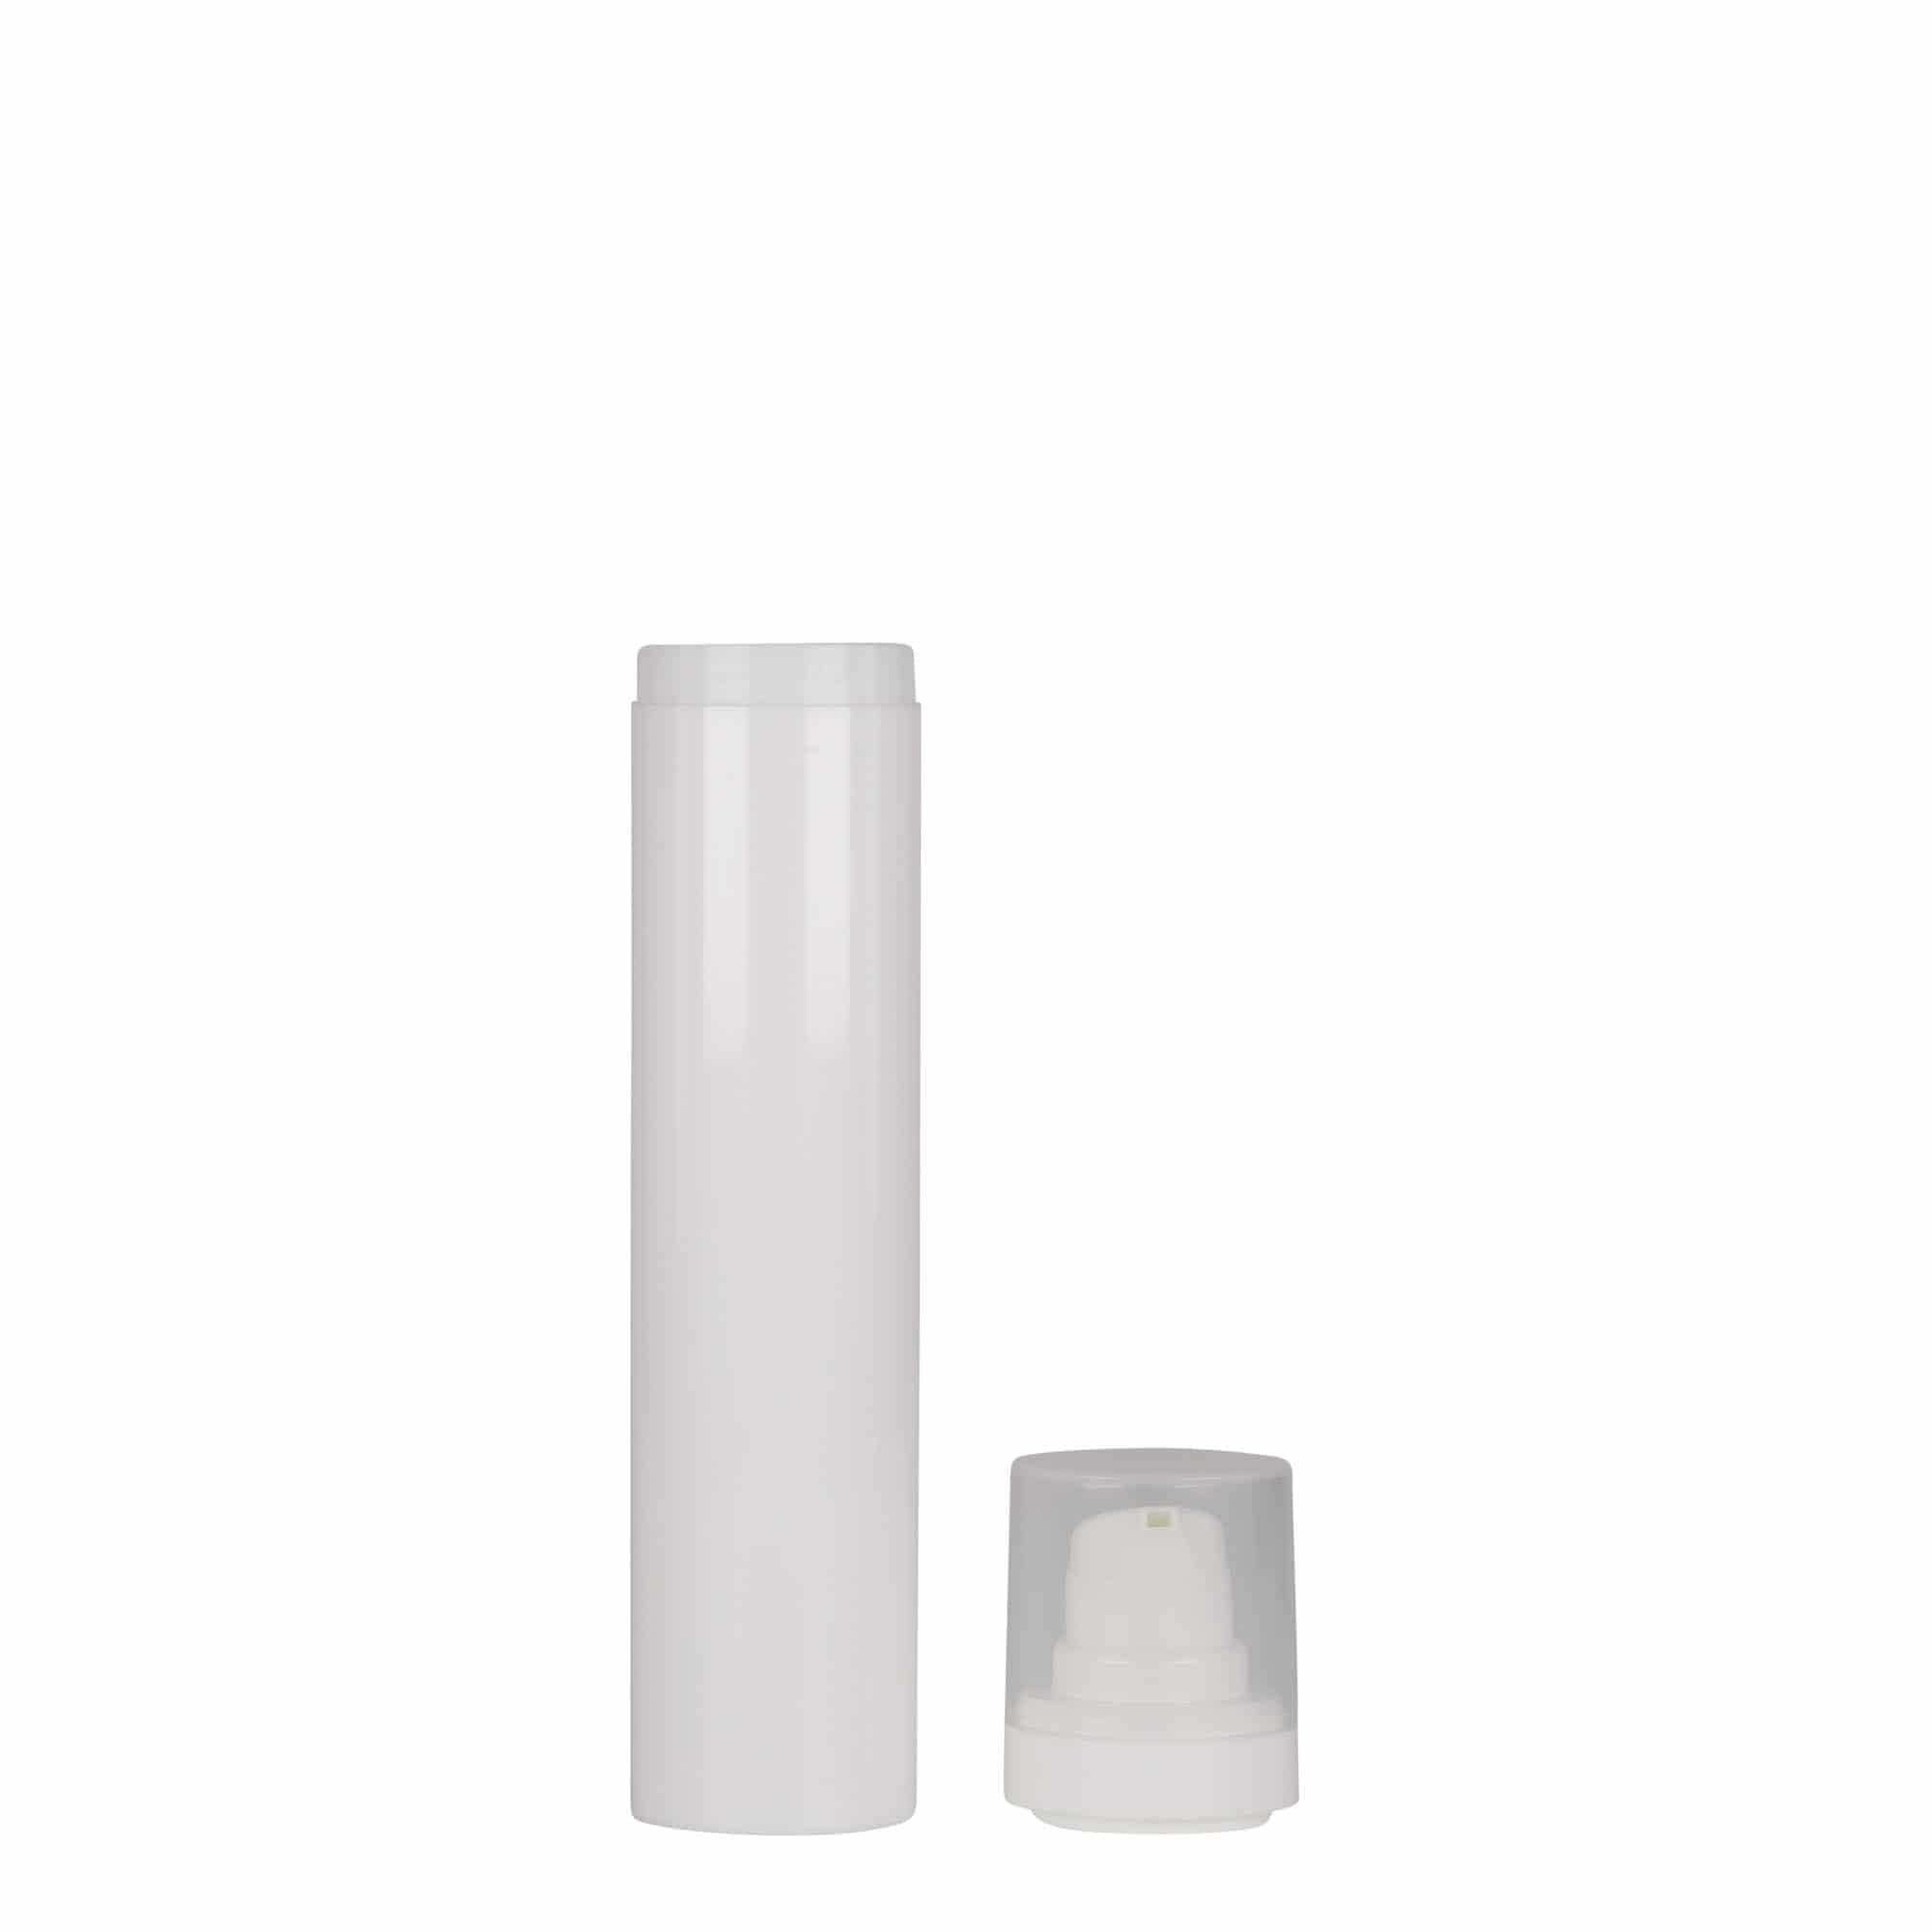 Bezvzduchový dávkovač 50 ml 'Micro', plast PP, bílý